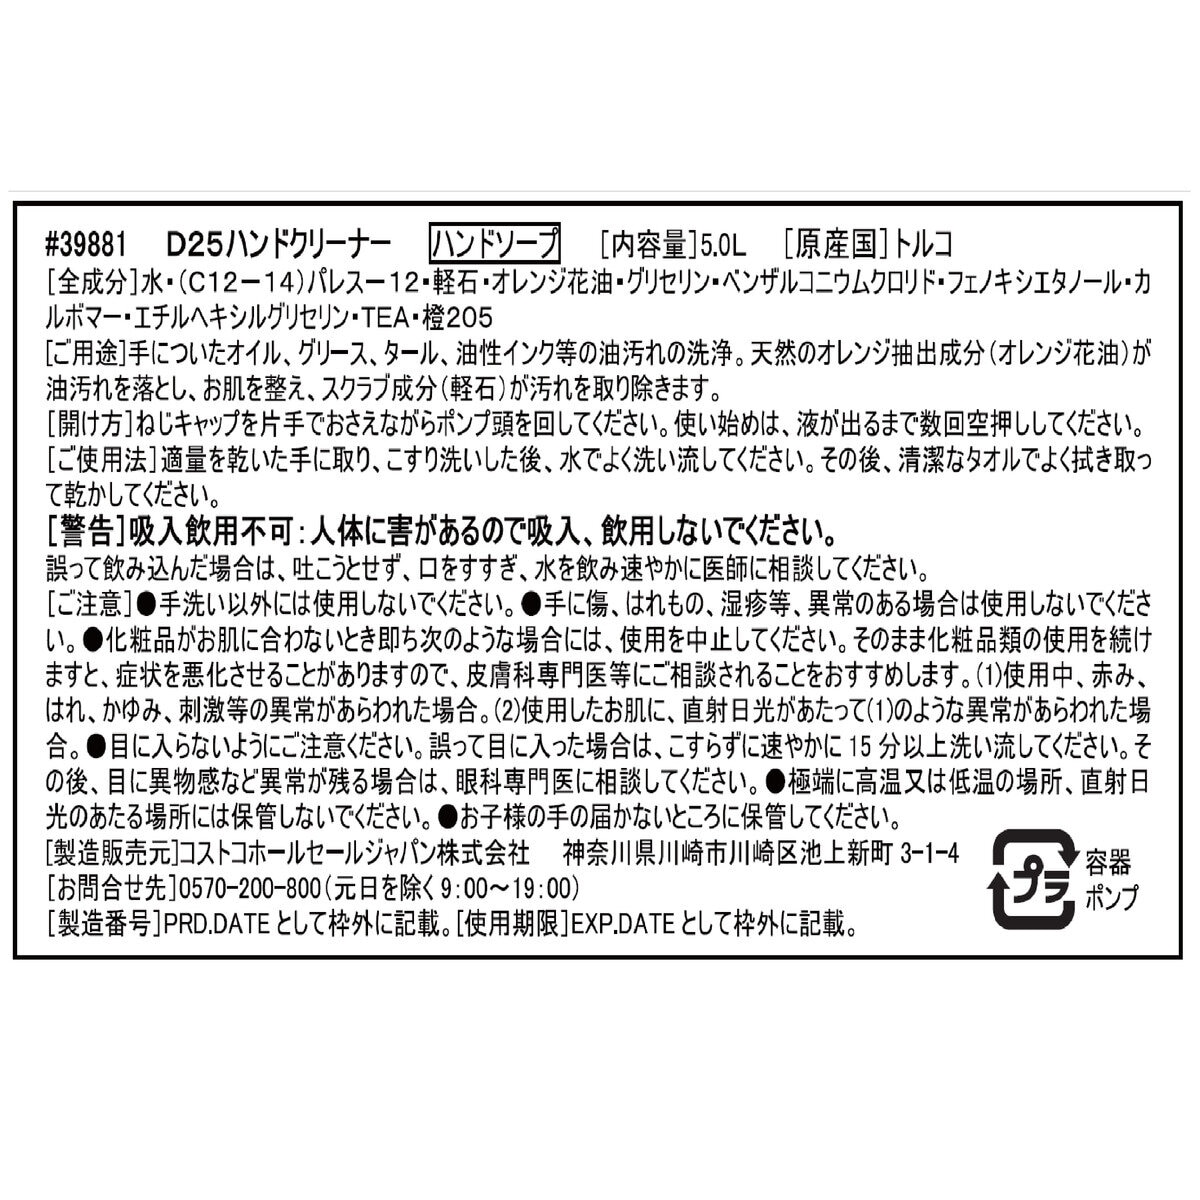 D25 ハンドクリーナー 5l Costco Japan